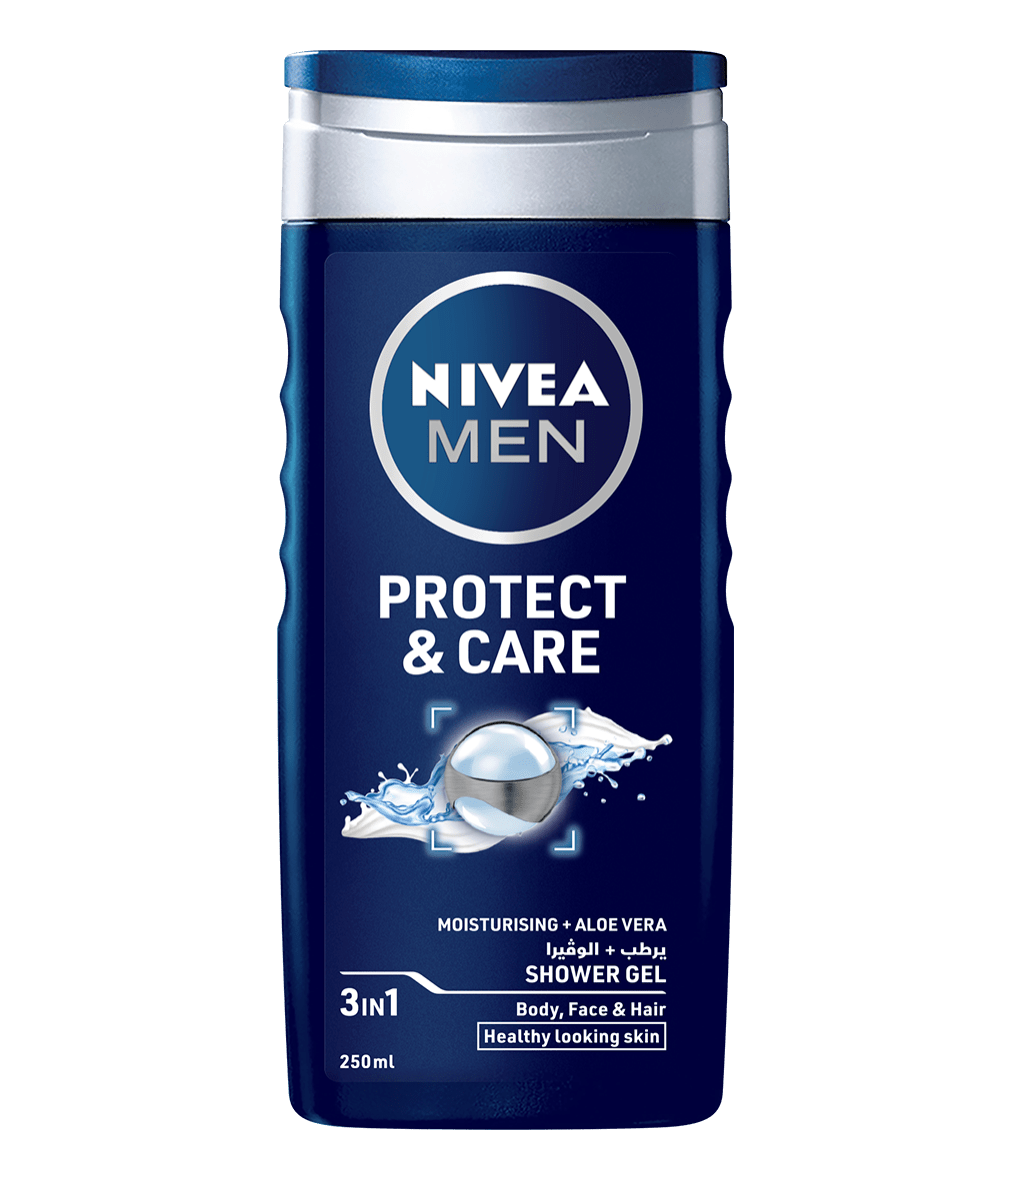 83611 Nivea Men Protect & Care shower gel 250ml clean packshot 